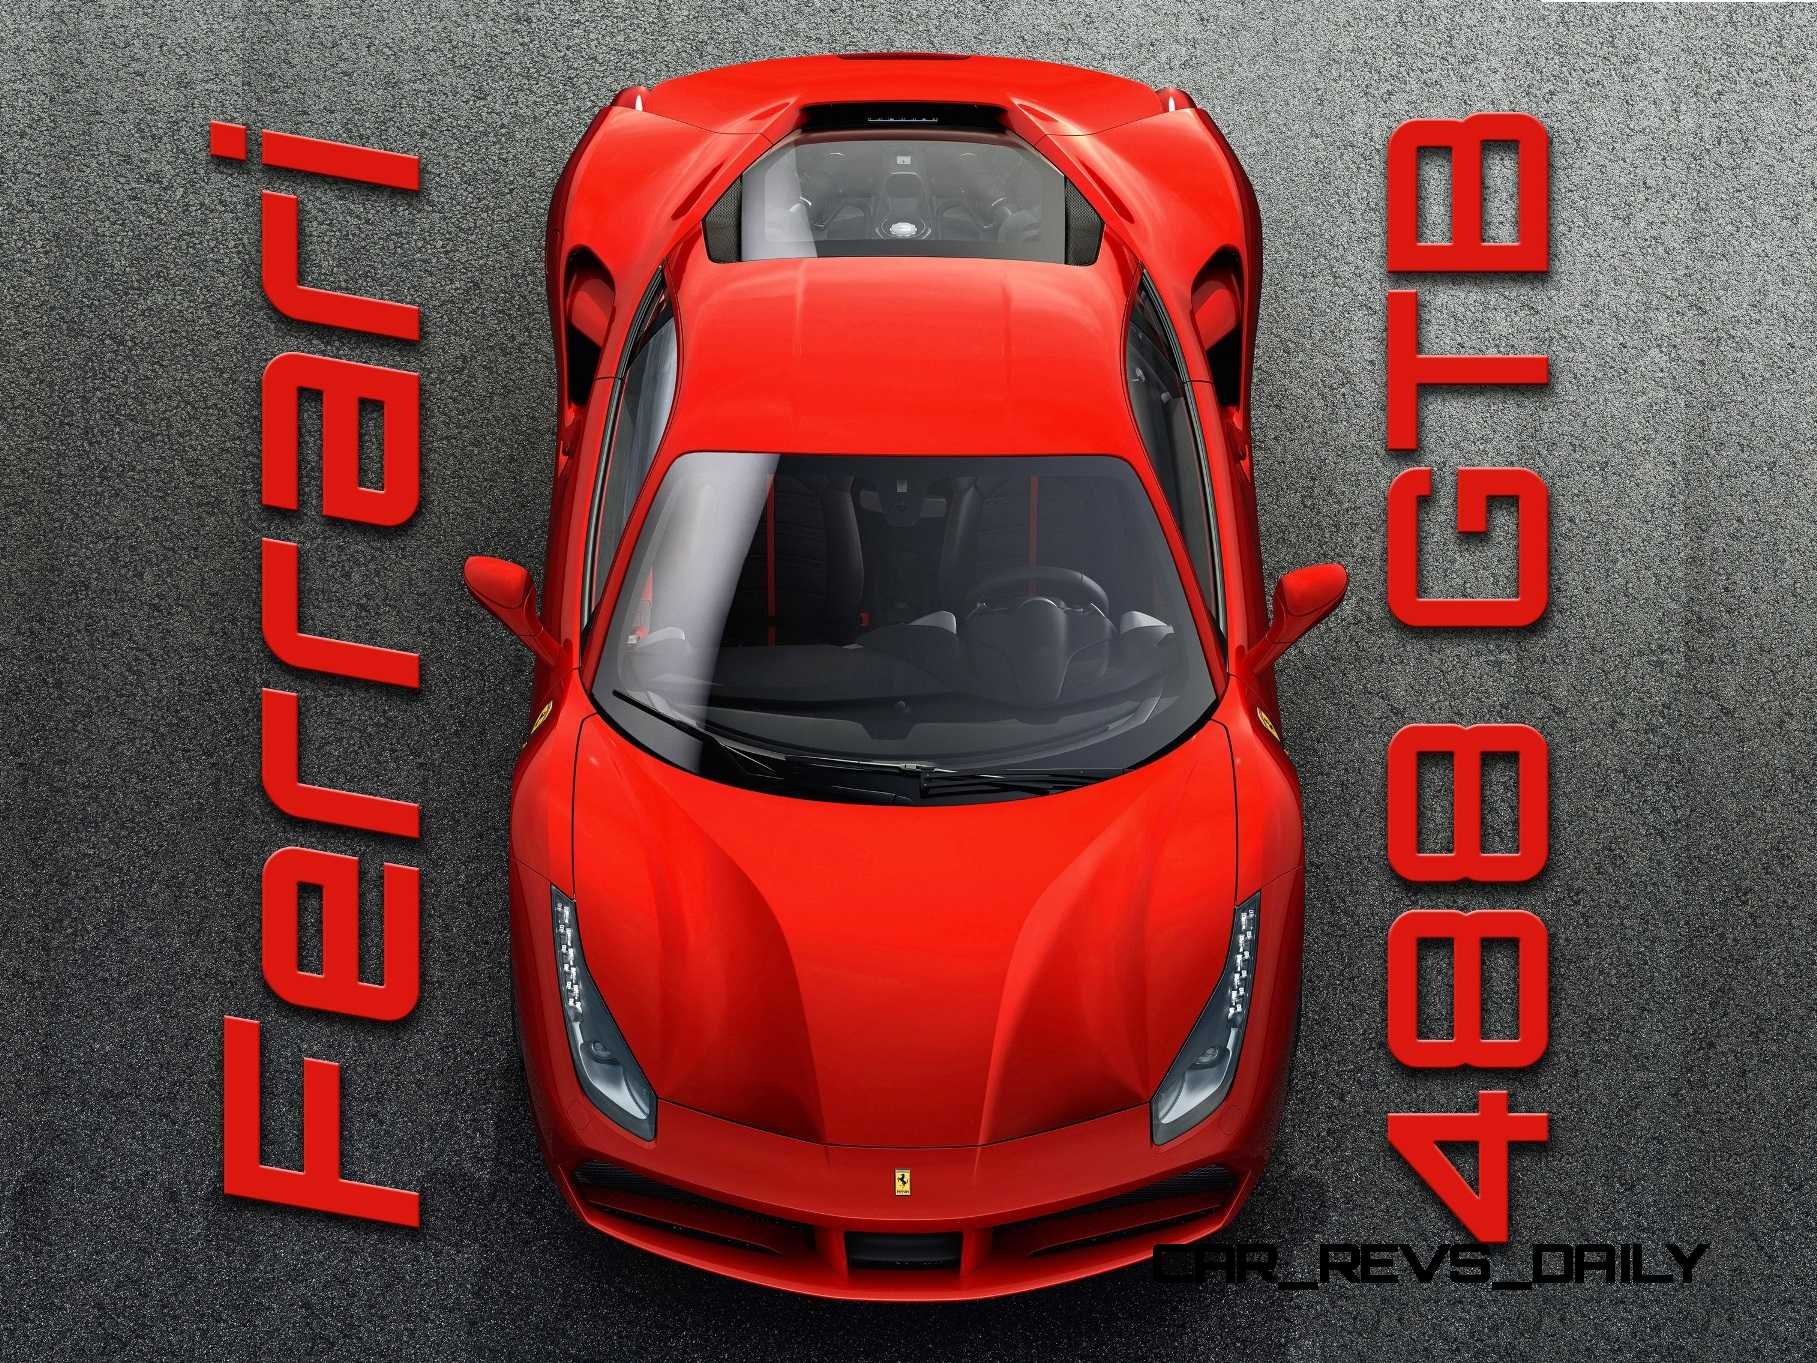 2016, Ferrari, 488, Supercar Wallpaper